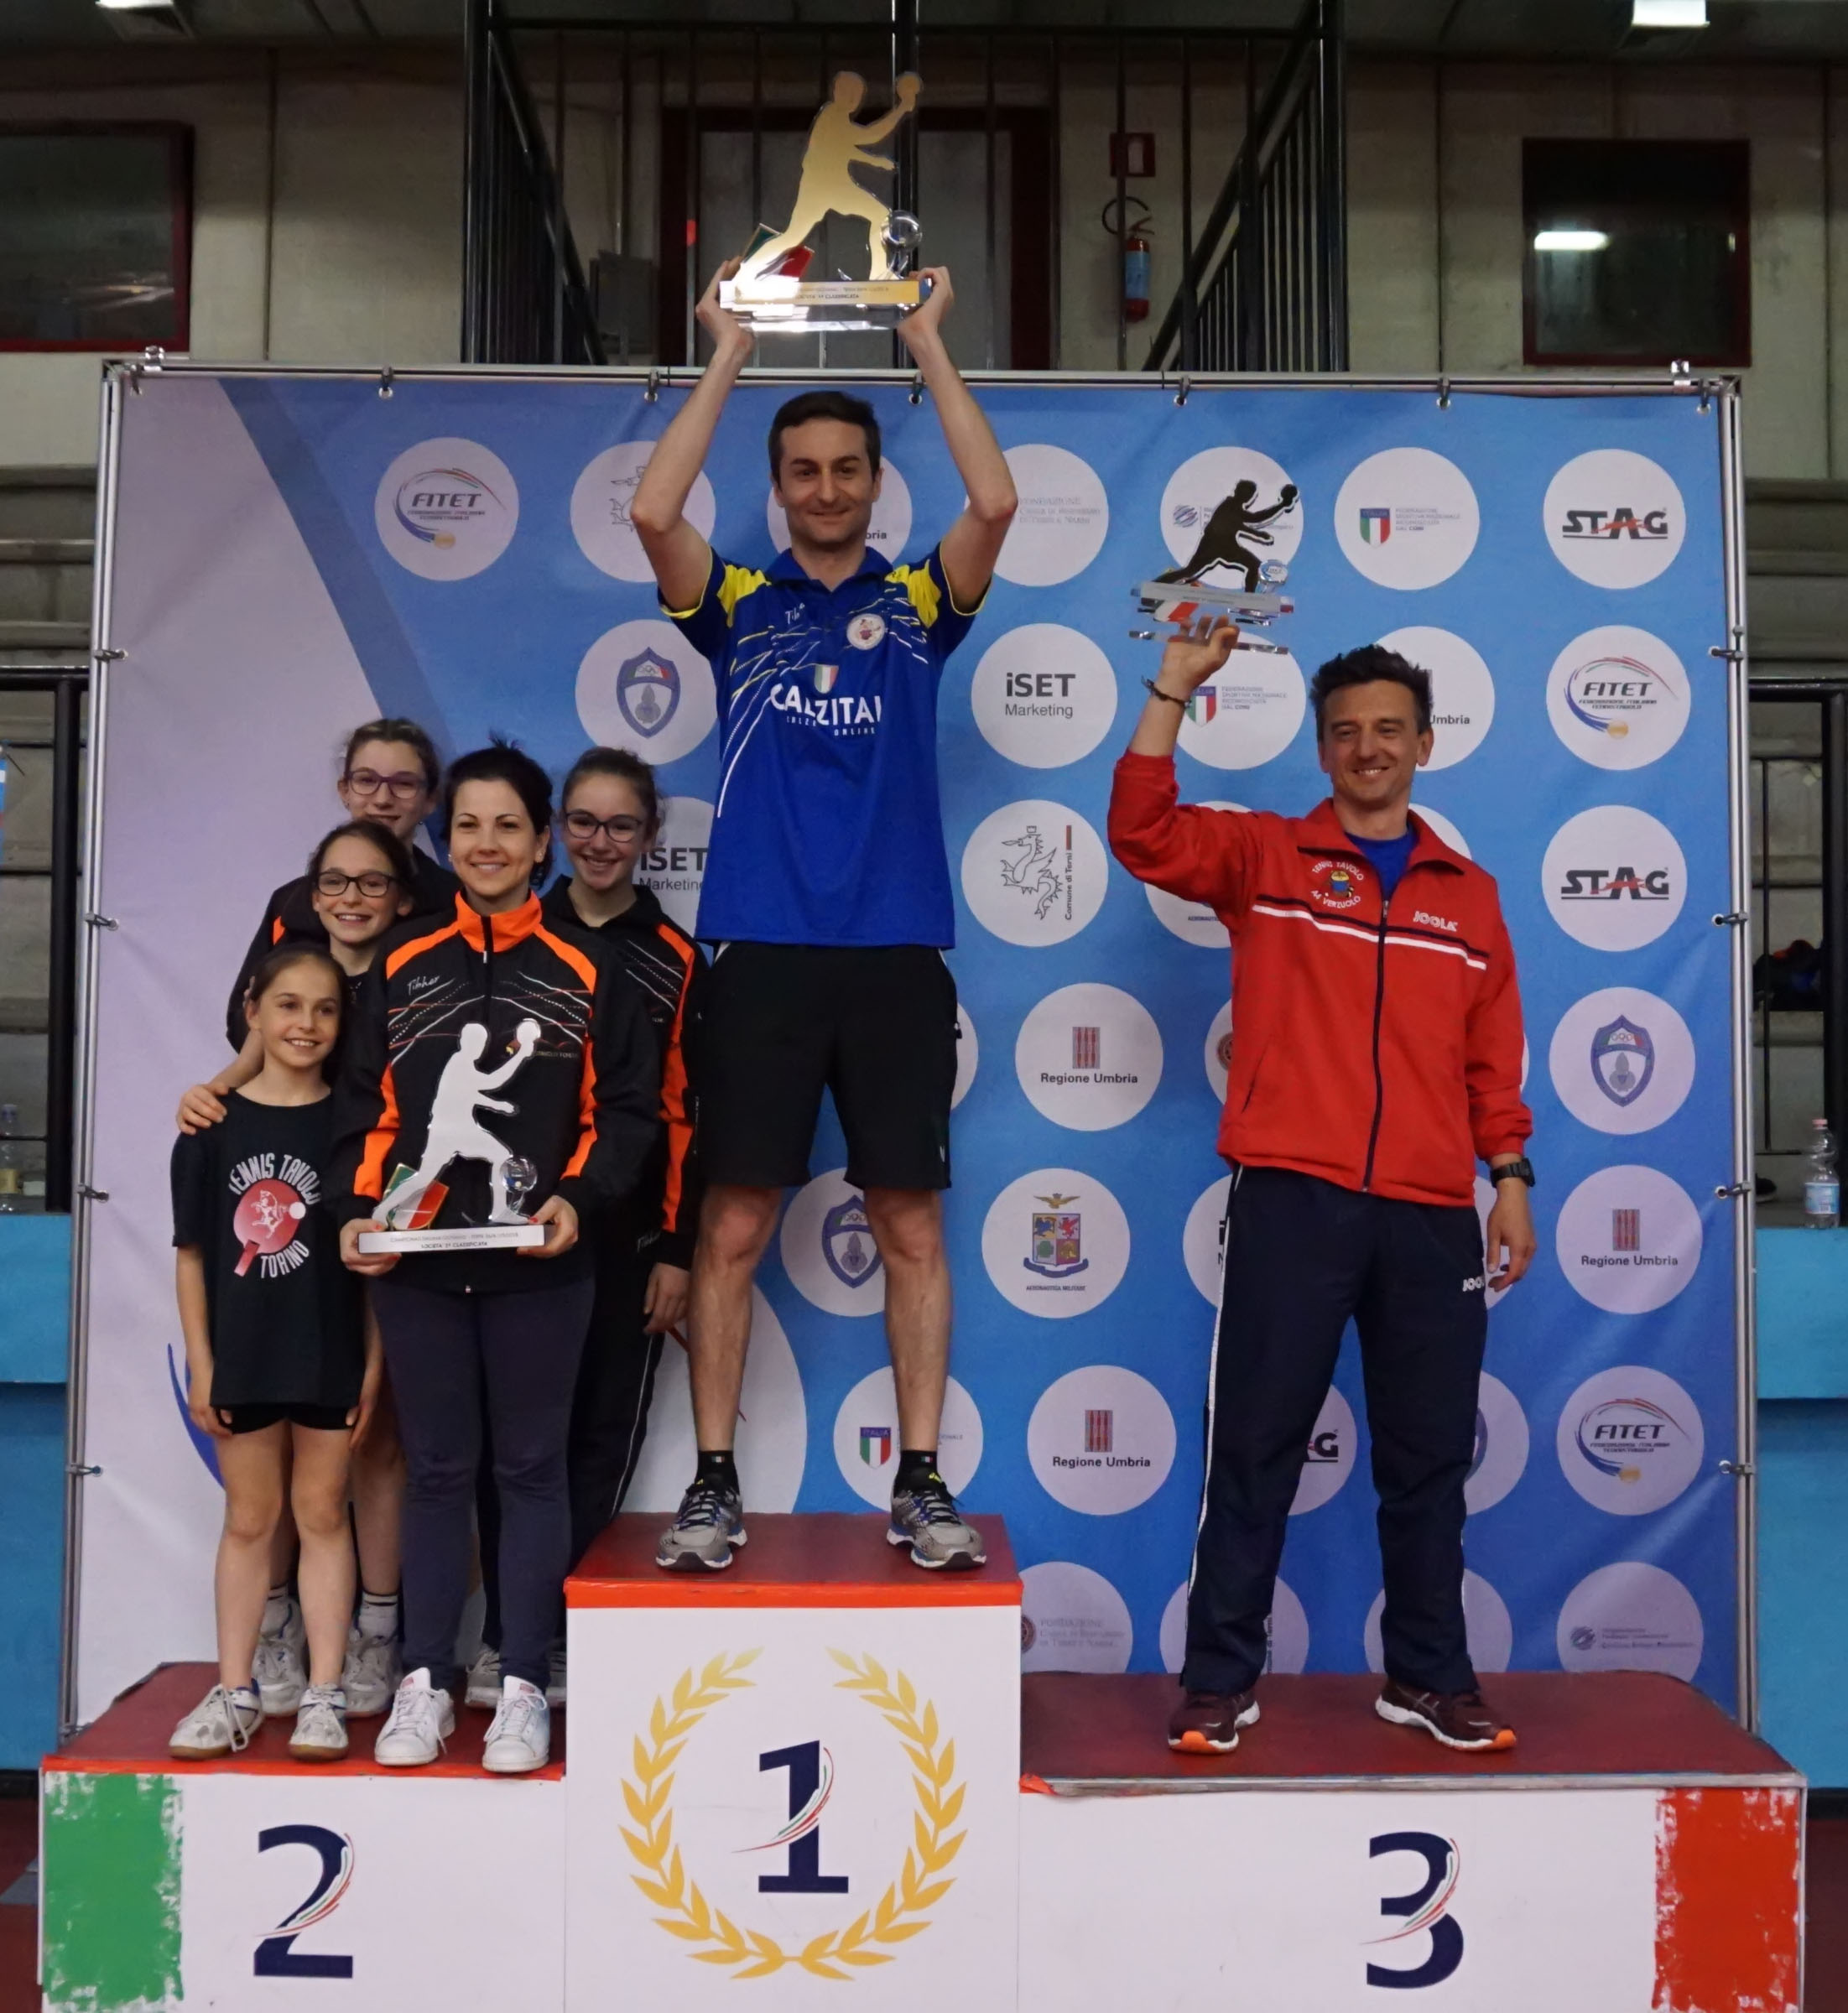 Podio Classifica di società Campionat Italiani Giovanili Terni 2018